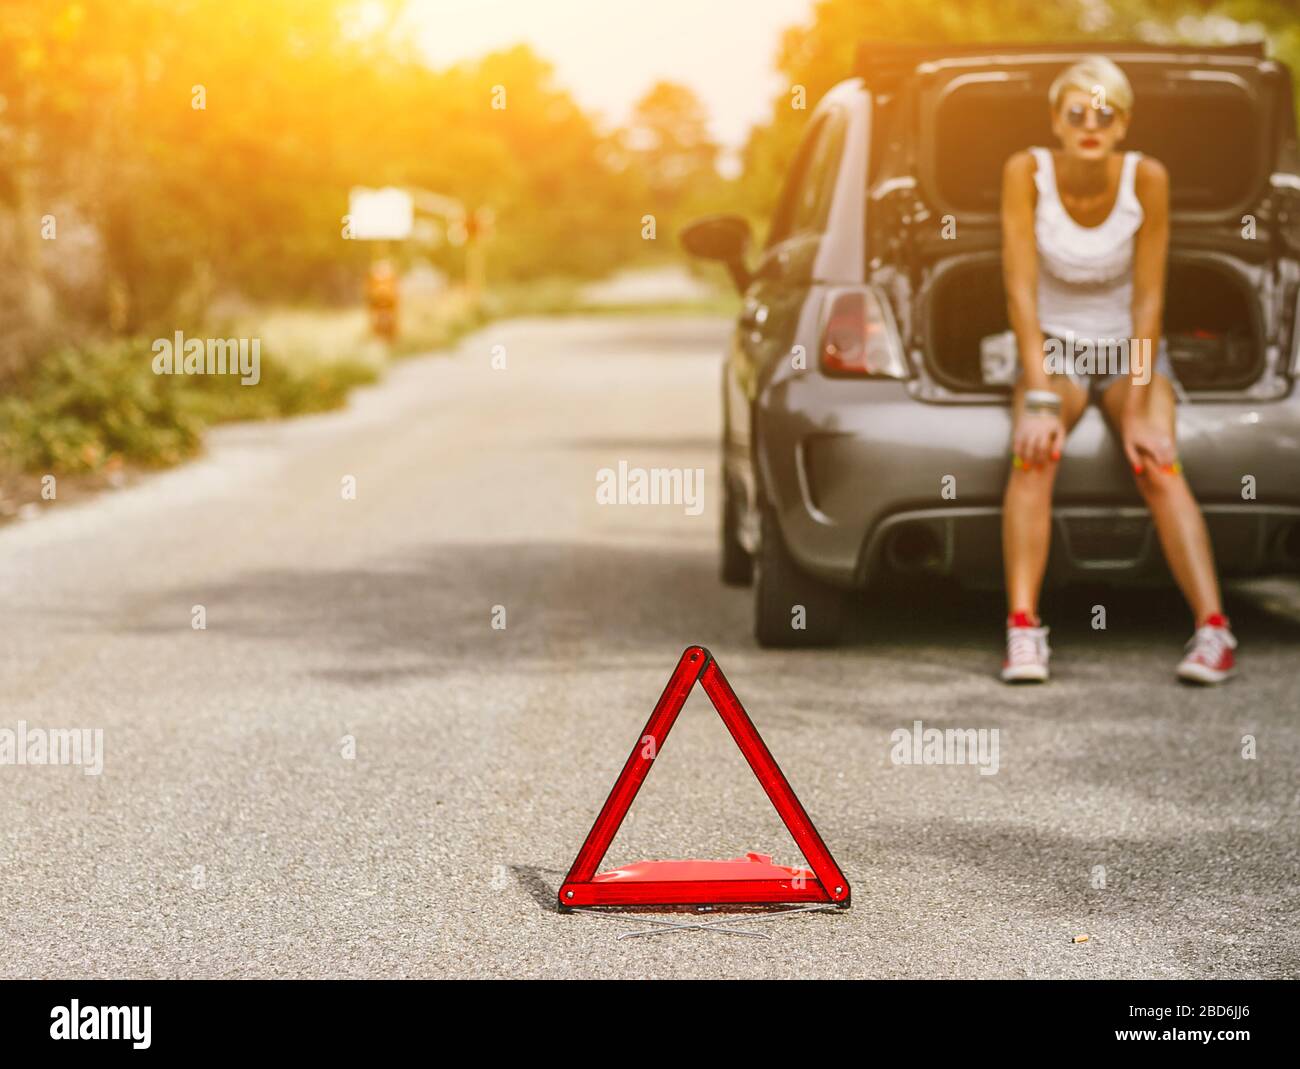 Junge schöne Frau spection einen Hinterreifen auf der Seite der Straße. Auto mit Problemen und roten Dreieck, um andere Verkehrsteilnehmer zu warnen. Stockfoto